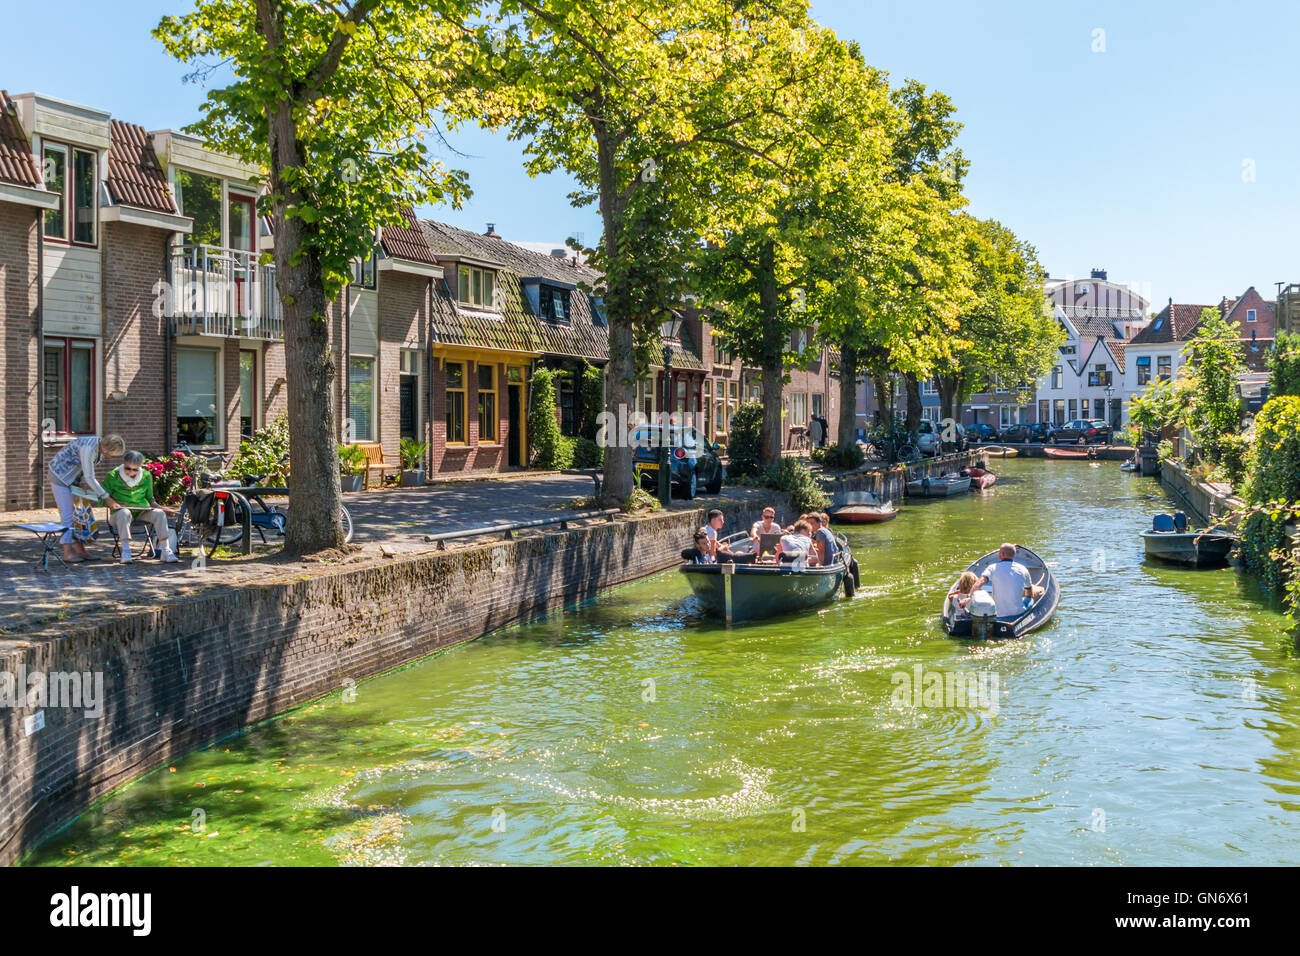 Bateaux sur Lindegracht dans le canal centre-ville d'Alkmaar, Hollande du Nord, Pays-Bas Banque D'Images